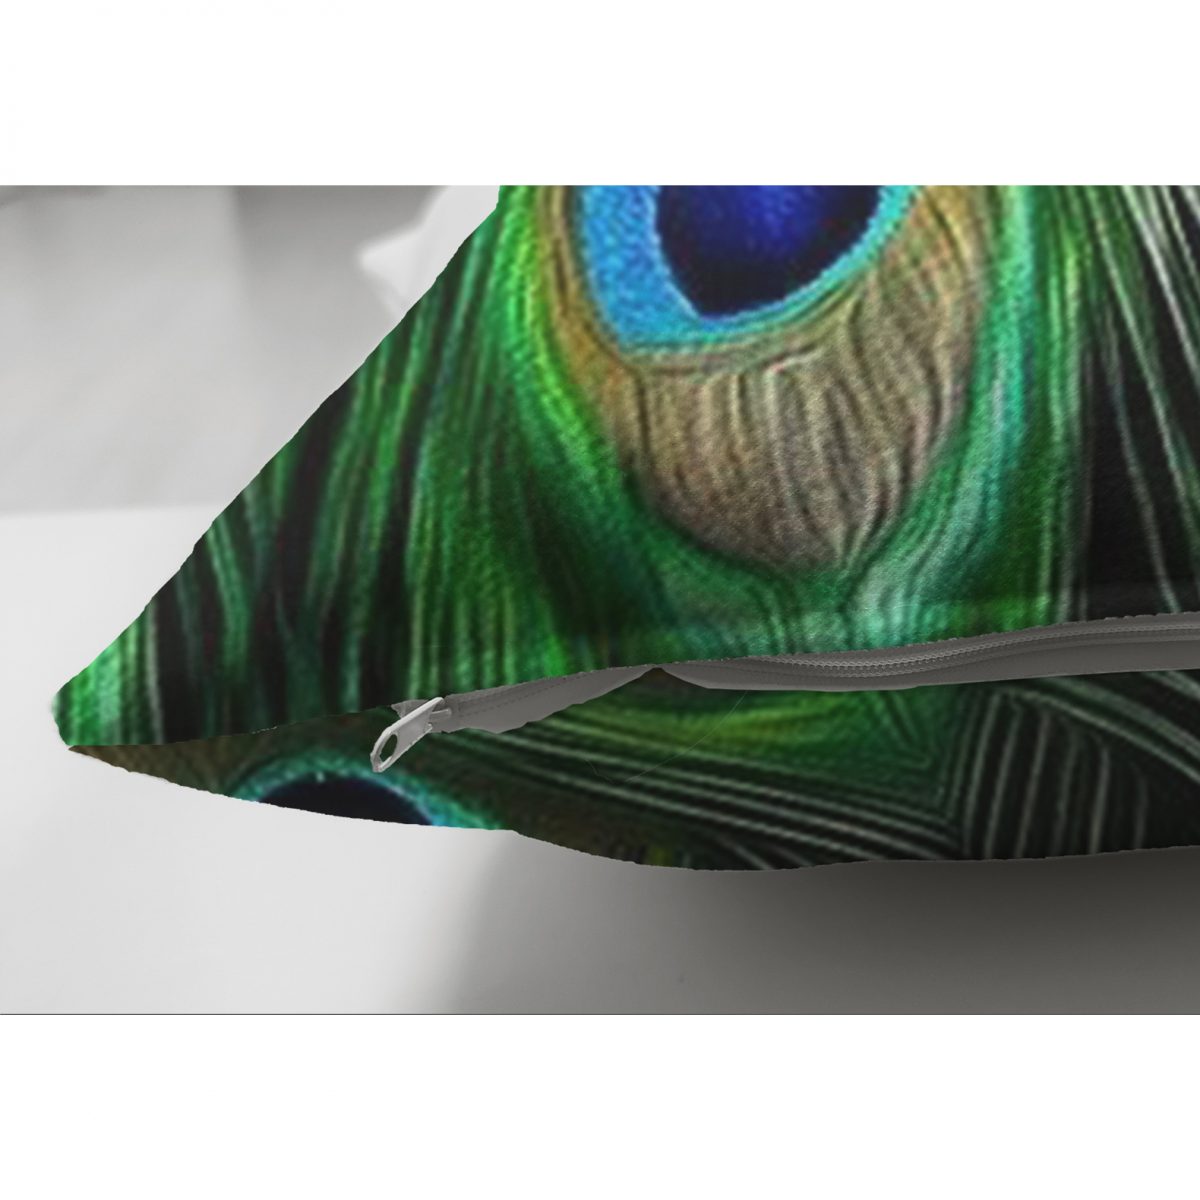 Çift Taraflı Koyu Zeminde Renkli Tüyler Özel Tasarımlı Dekoratif Süet Yastık Kırlent Kılıfı Realhomes